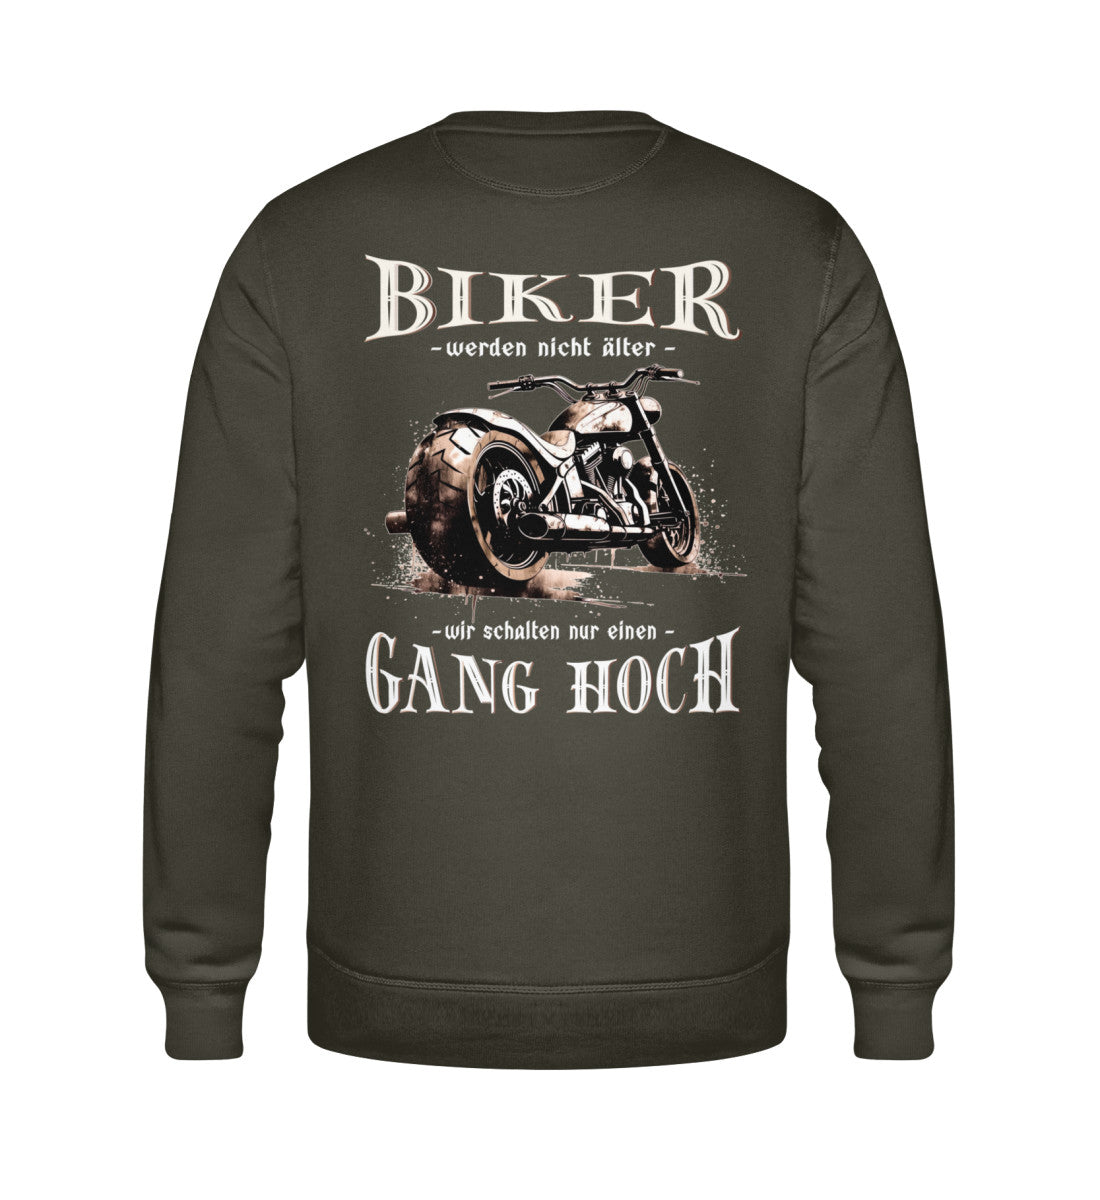 Ein Biker Sweatshirt für Motorradfahrer von Wingbikers mit dem Aufdruck, Biker werden nicht älter - Wir schalten nur einen Gang hoch! mit Back Print, in khaki grün.